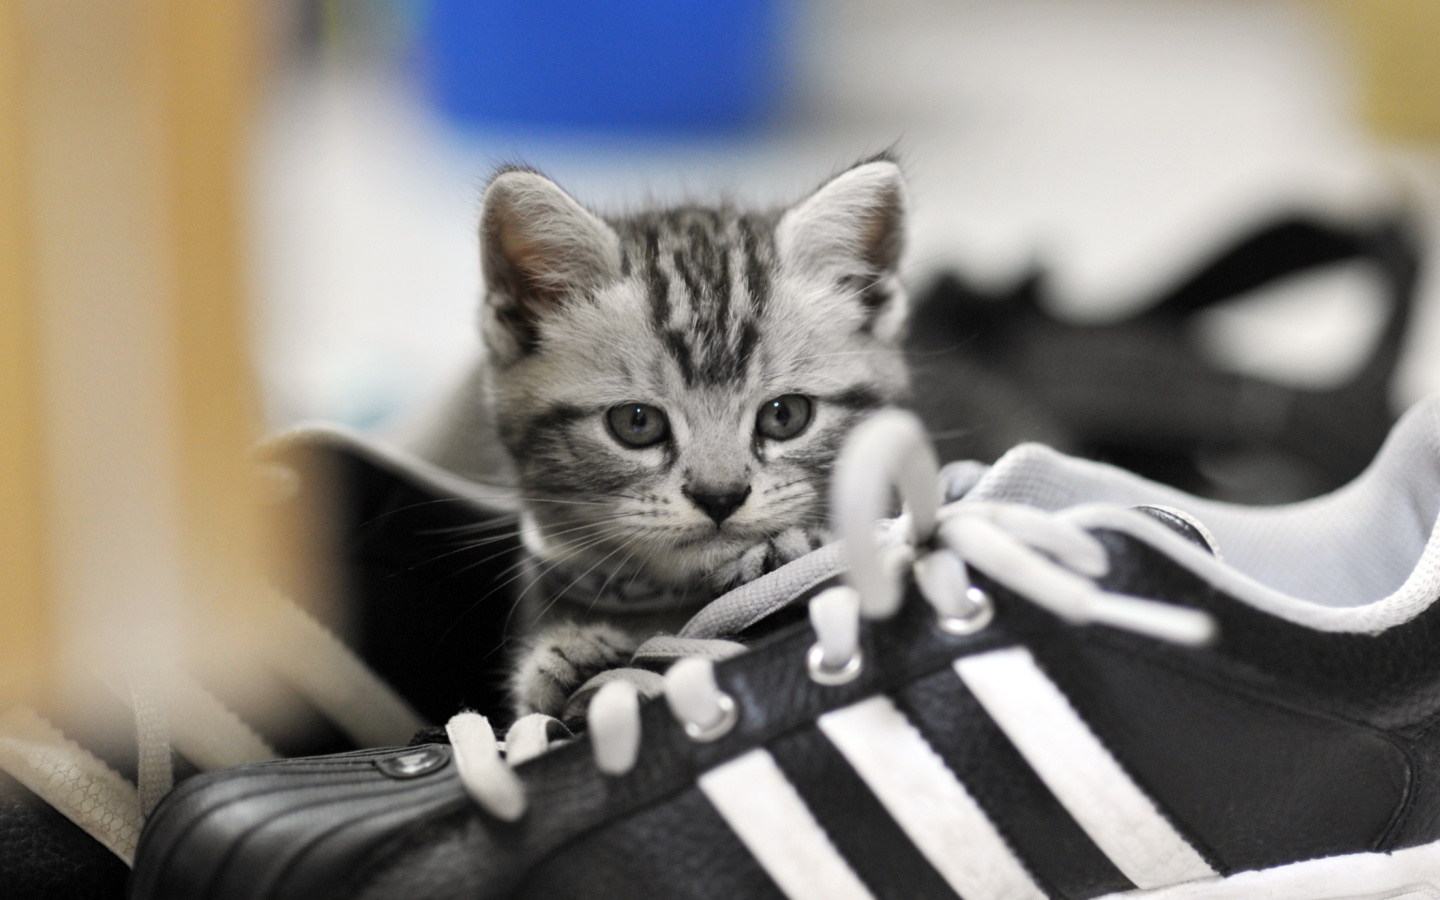 Kitten with shoes screenshot #1 1440x900